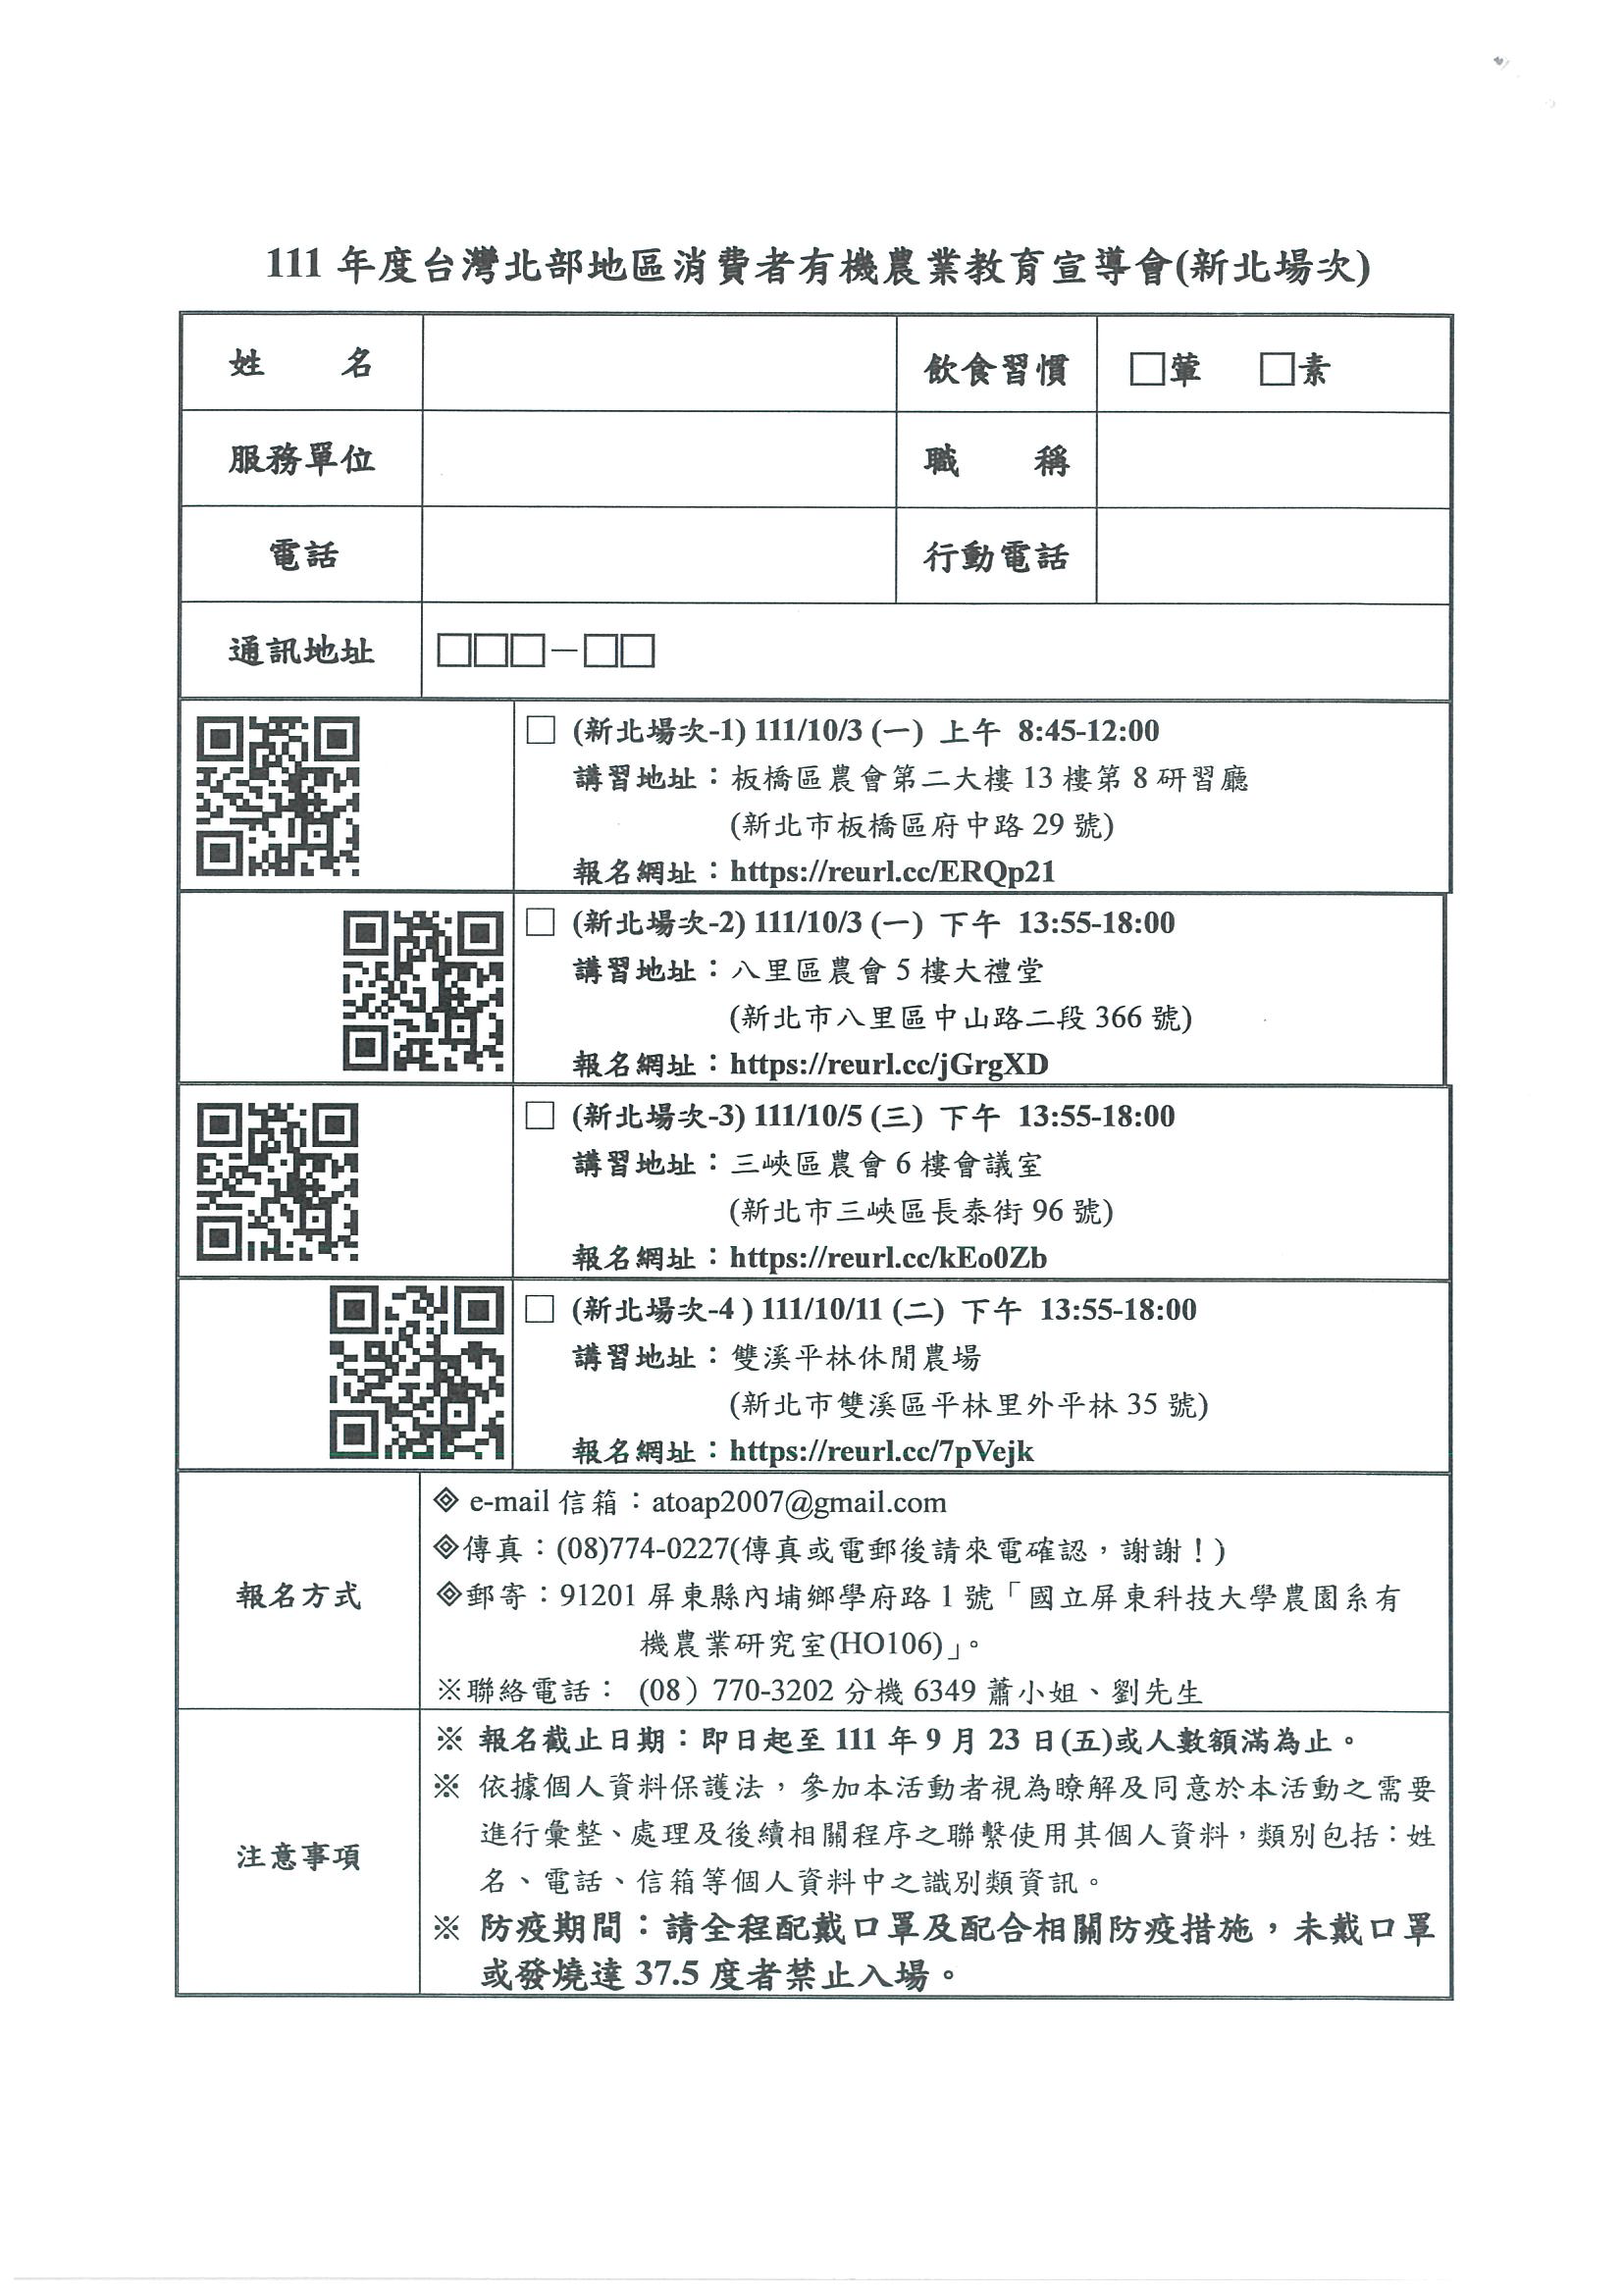 台灣有機促進協會課程資訊-8